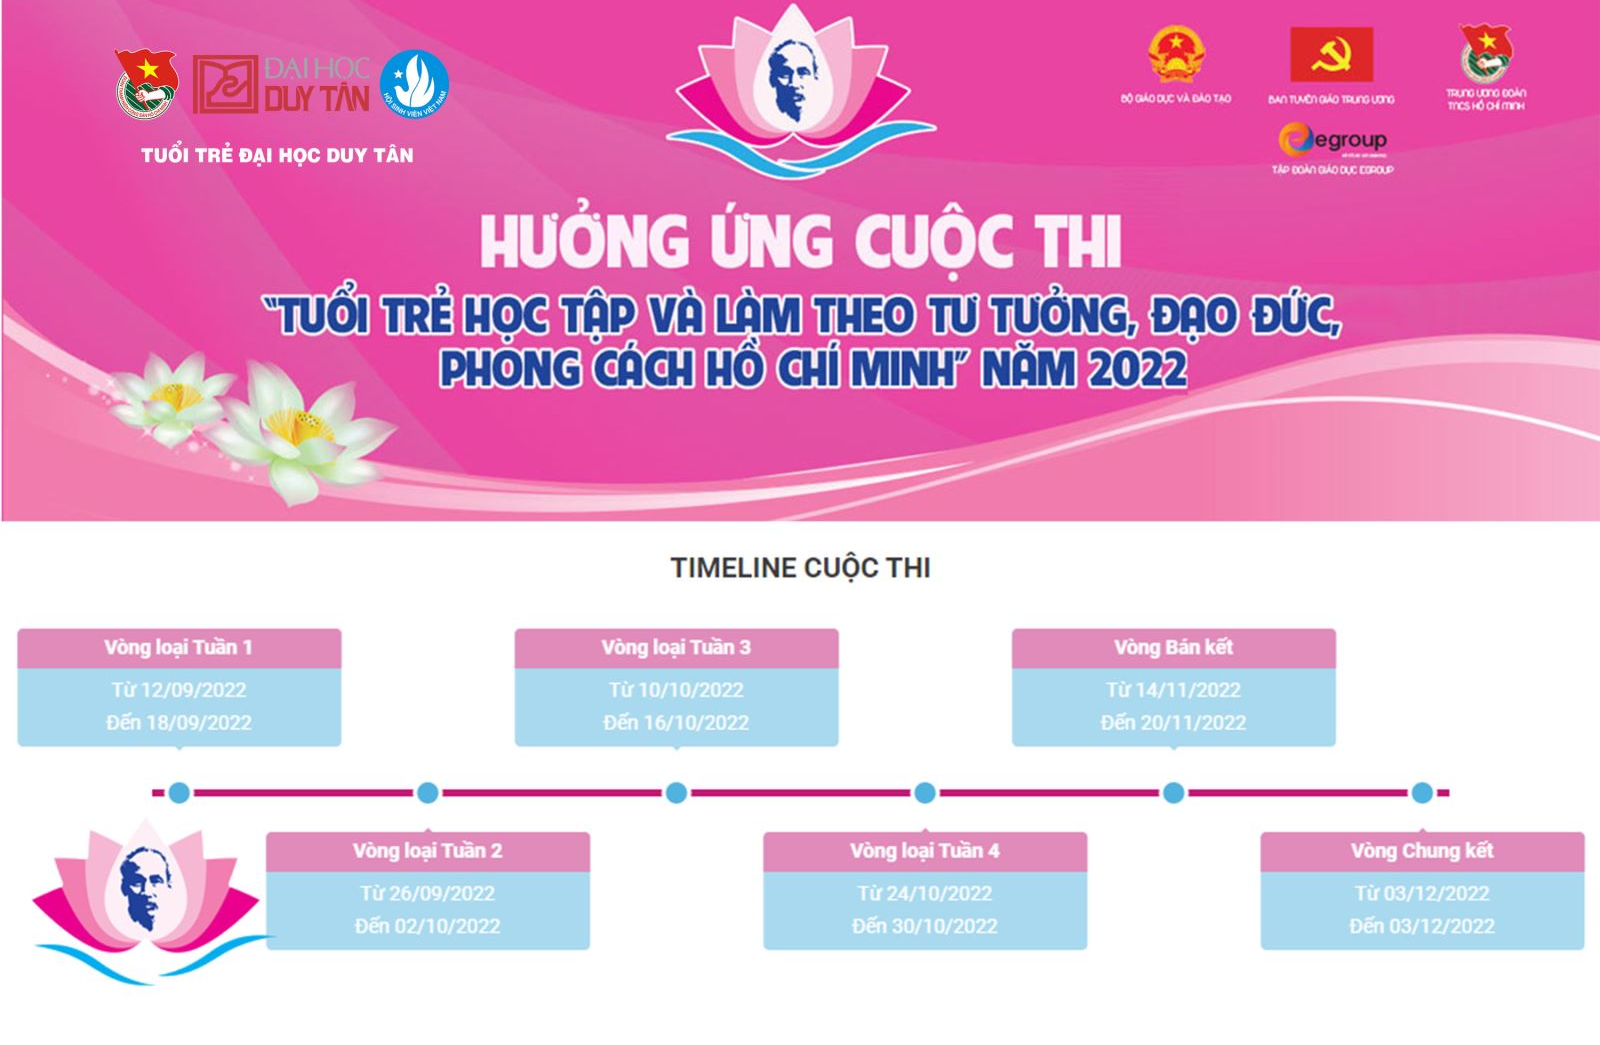 Cuộc thi "Tuổi trẻ học tập và làm theo tư tưởng, đạo đức, phong cách Hồ Chí Minh" năm 2022